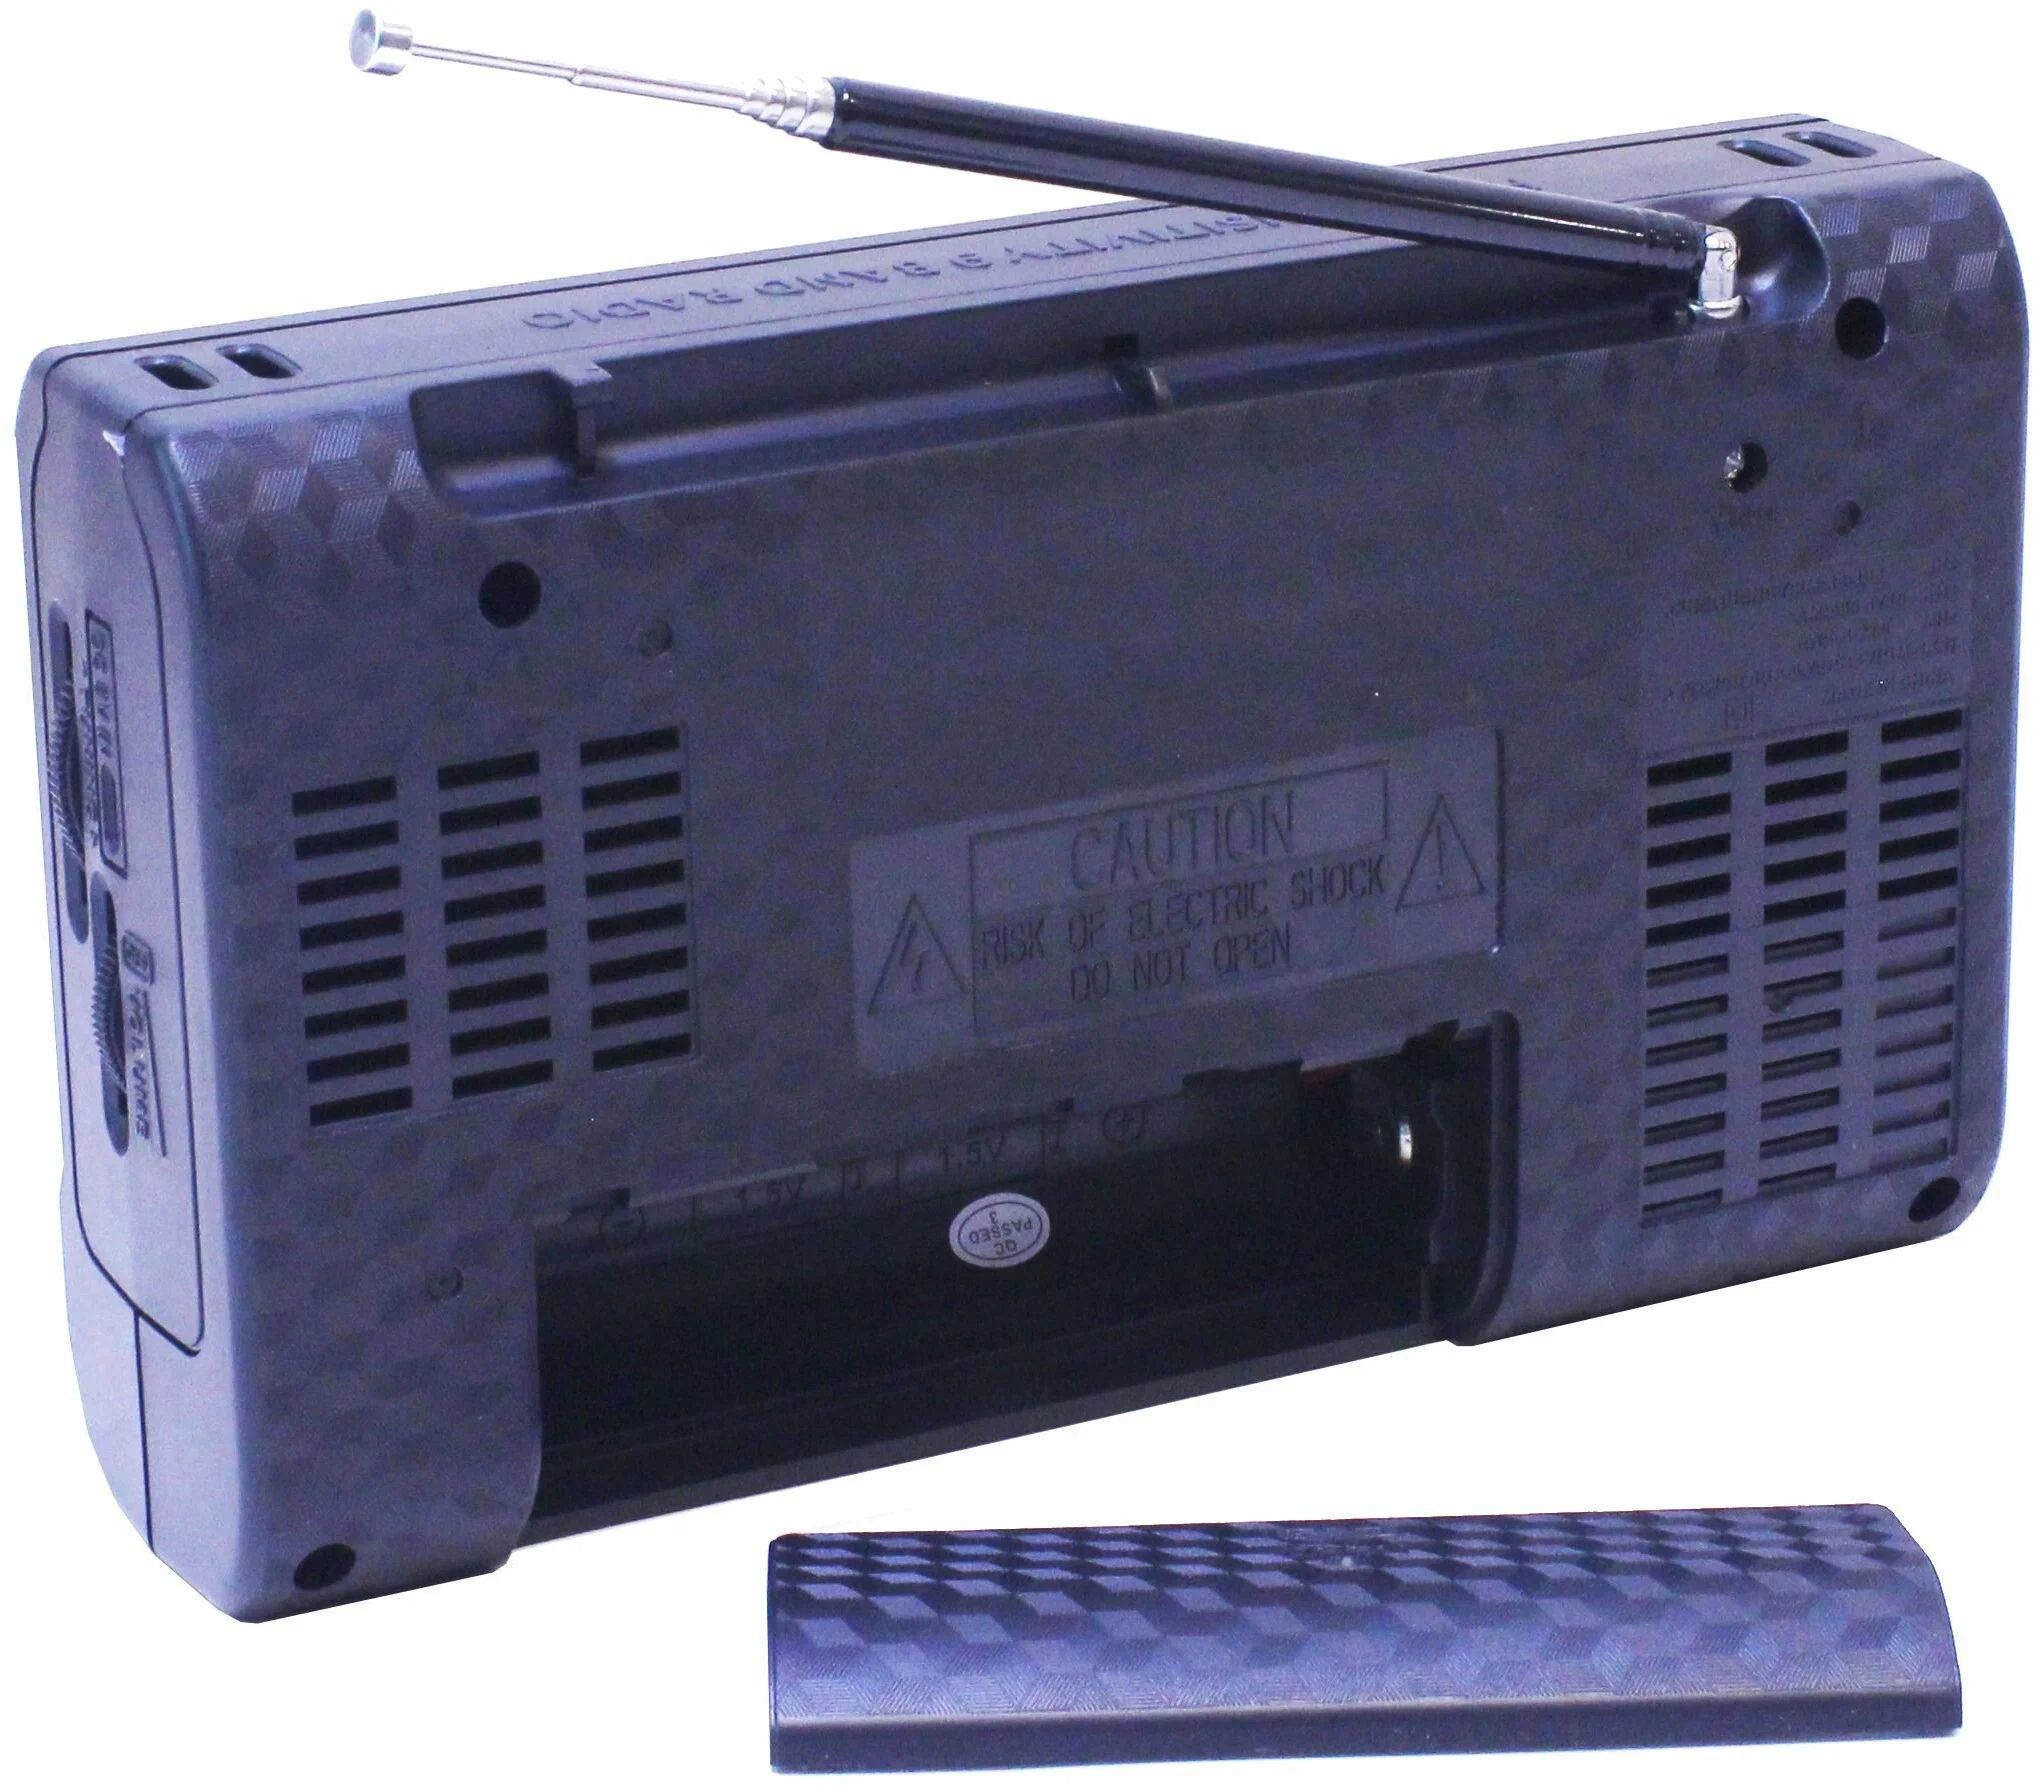 Аналоговый радиоприемник с универсальным питанием и хорошим звуком GOLONE RX-3040